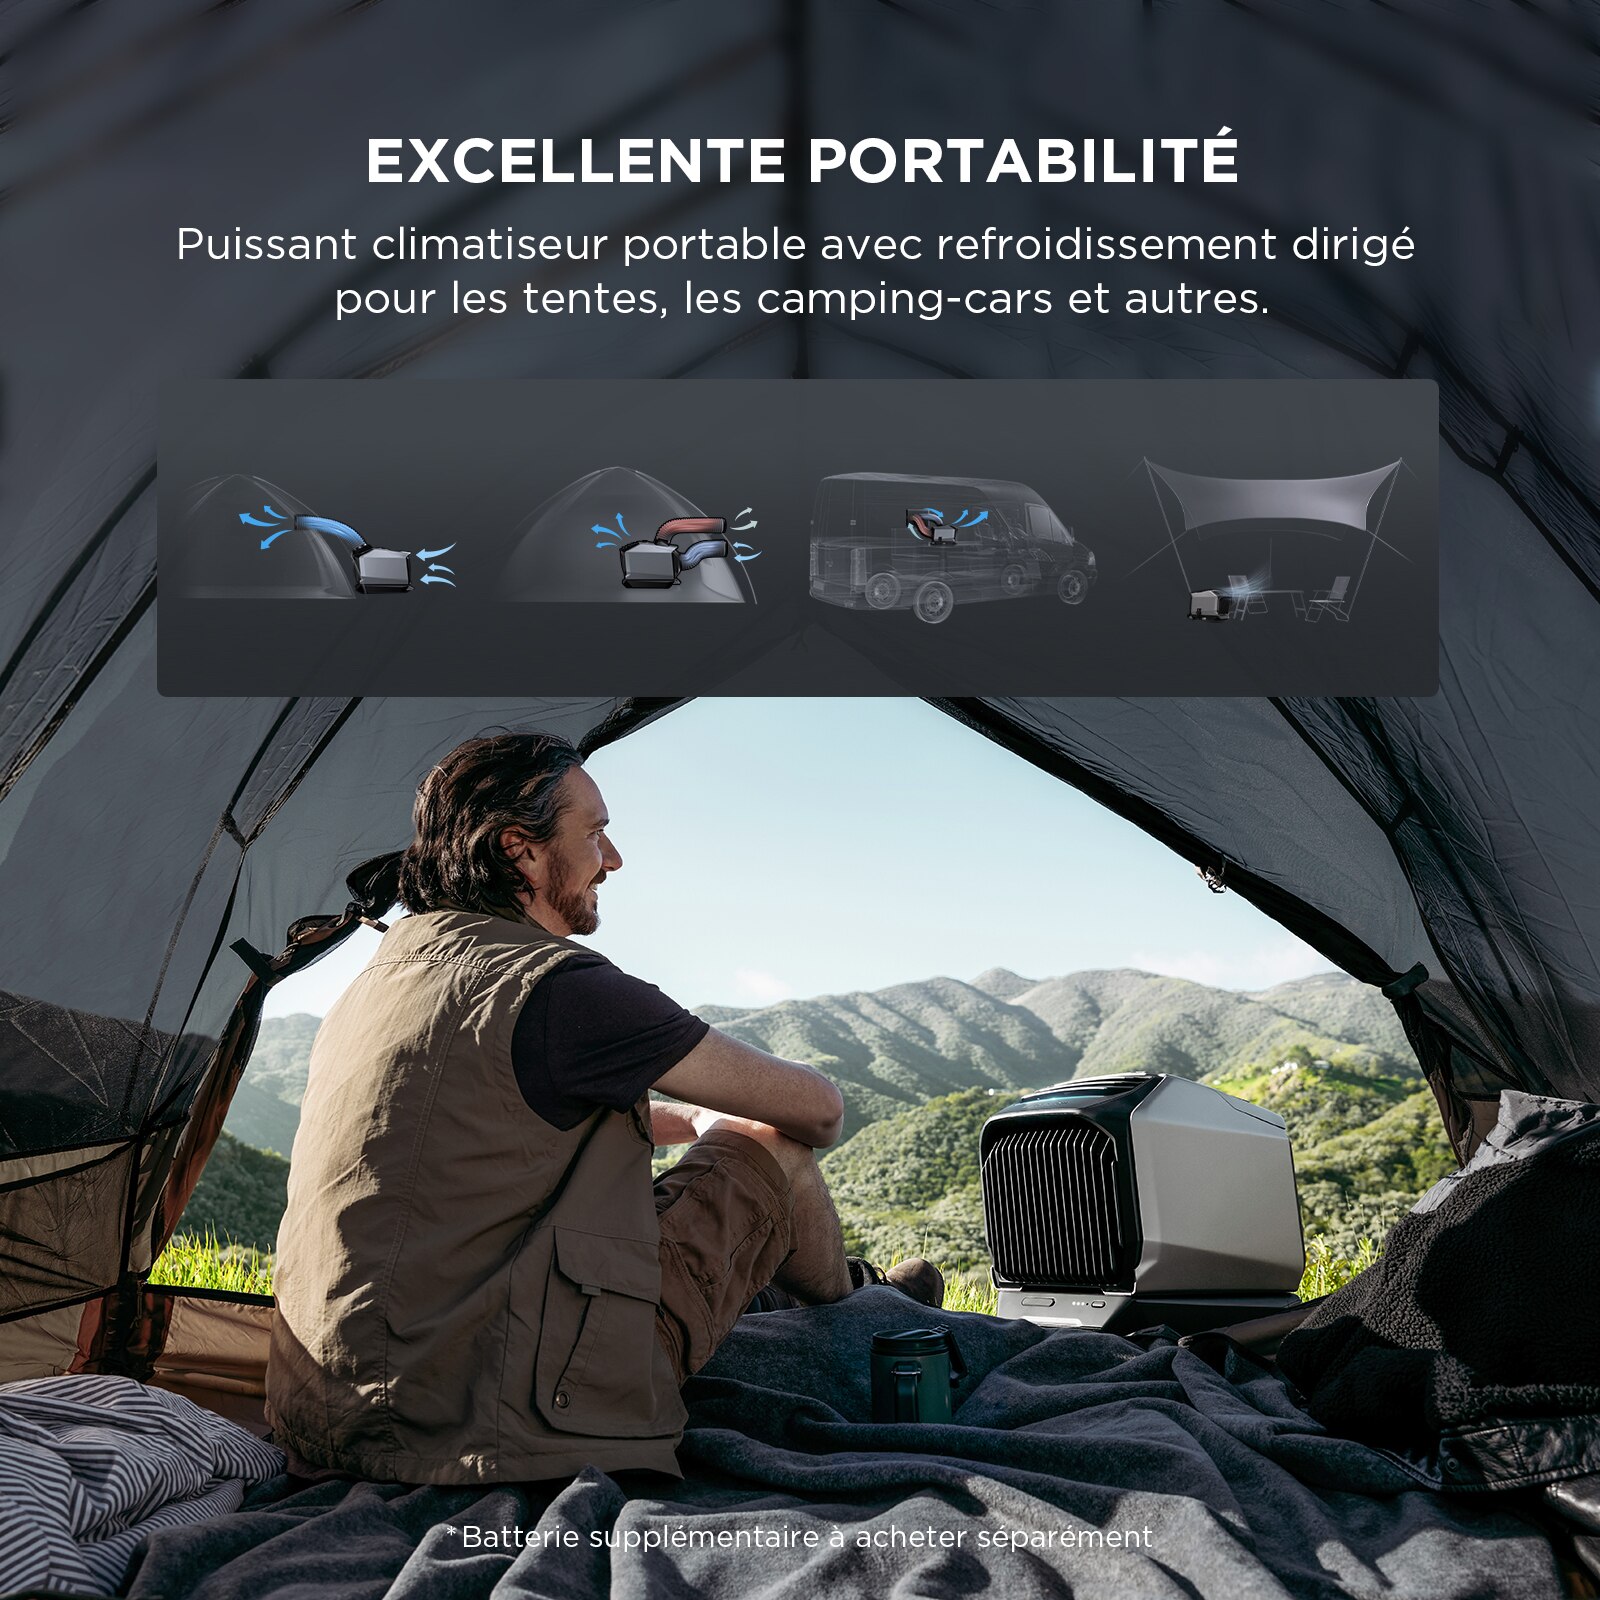 EcoFlow-Climatiseur-portable-WAVE-2-chauffage-et-refroidissement-5min-pour-tomber-18-44dB-faible-bruit-camping